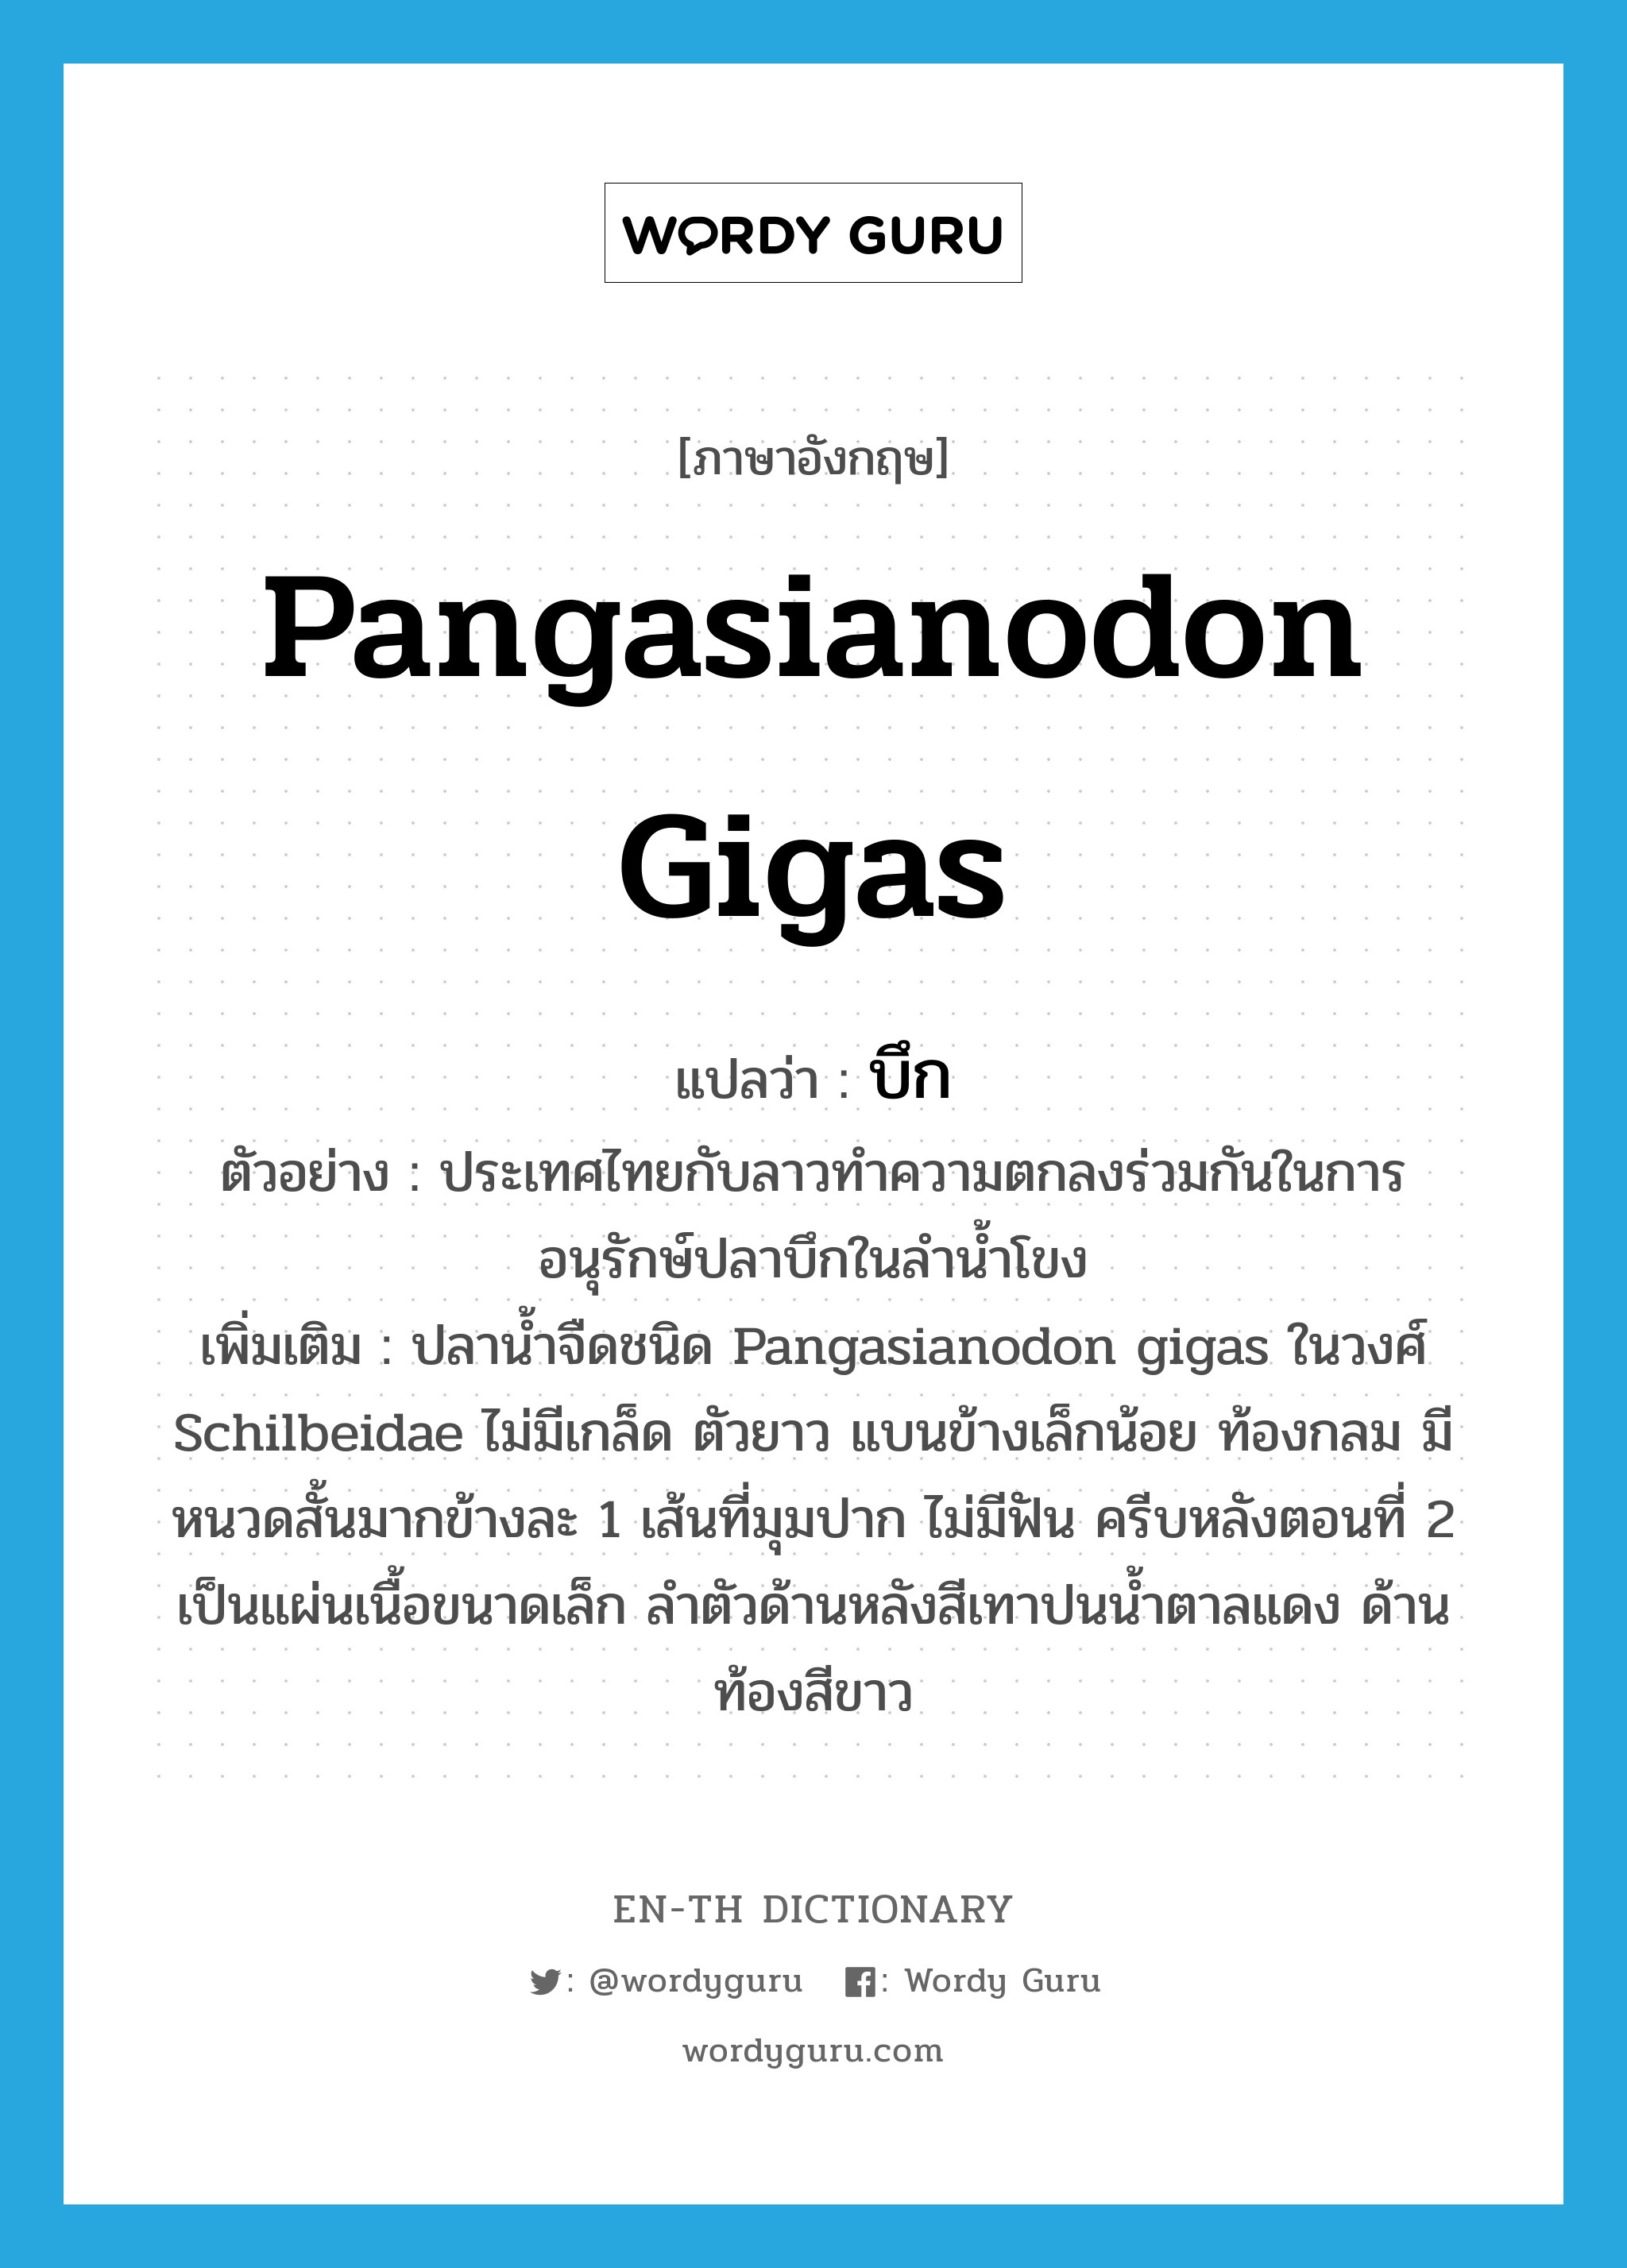 Pangasianodon gigas แปลว่า?, คำศัพท์ภาษาอังกฤษ Pangasianodon gigas แปลว่า บึก ประเภท N ตัวอย่าง ประเทศไทยกับลาวทำความตกลงร่วมกันในการอนุรักษ์ปลาบึกในลำน้ำโขง เพิ่มเติม ปลาน้ำจืดชนิด Pangasianodon gigas ในวงศ์ Schilbeidae ไม่มีเกล็ด ตัวยาว แบนข้างเล็กน้อย ท้องกลม มีหนวดสั้นมากข้างละ 1 เส้นที่มุมปาก ไม่มีฟัน ครีบหลังตอนที่ 2 เป็นแผ่นเนื้อขนาดเล็ก ลำตัวด้านหลังสีเทาปนน้ำตาลแดง ด้านท้องสีขาว หมวด N